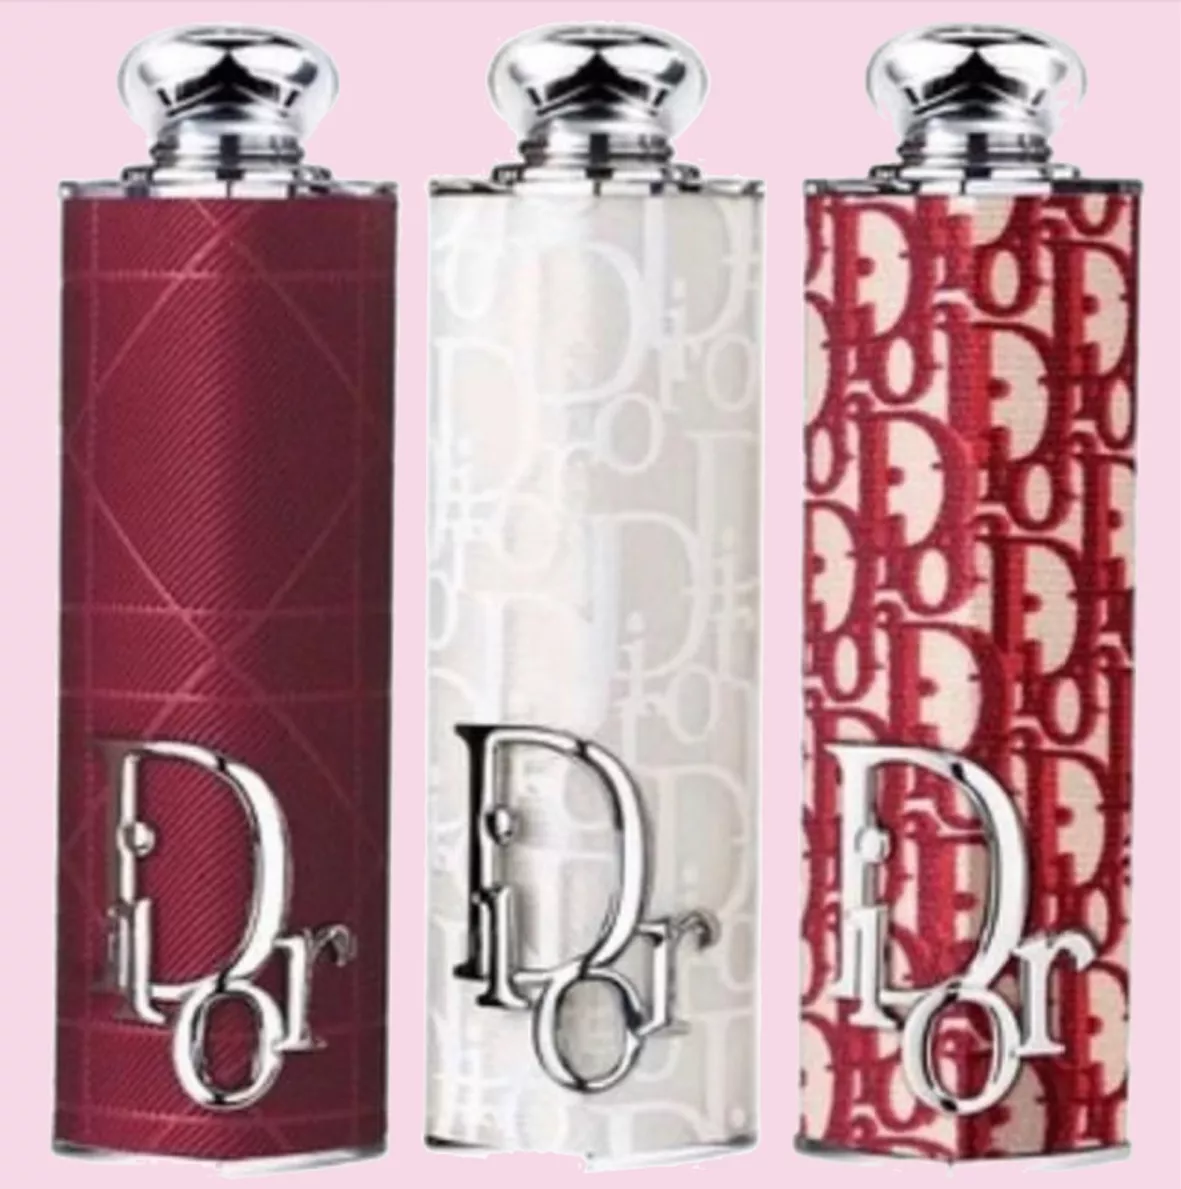 Limited-Edition Dior Addict Case: Lipstick Case